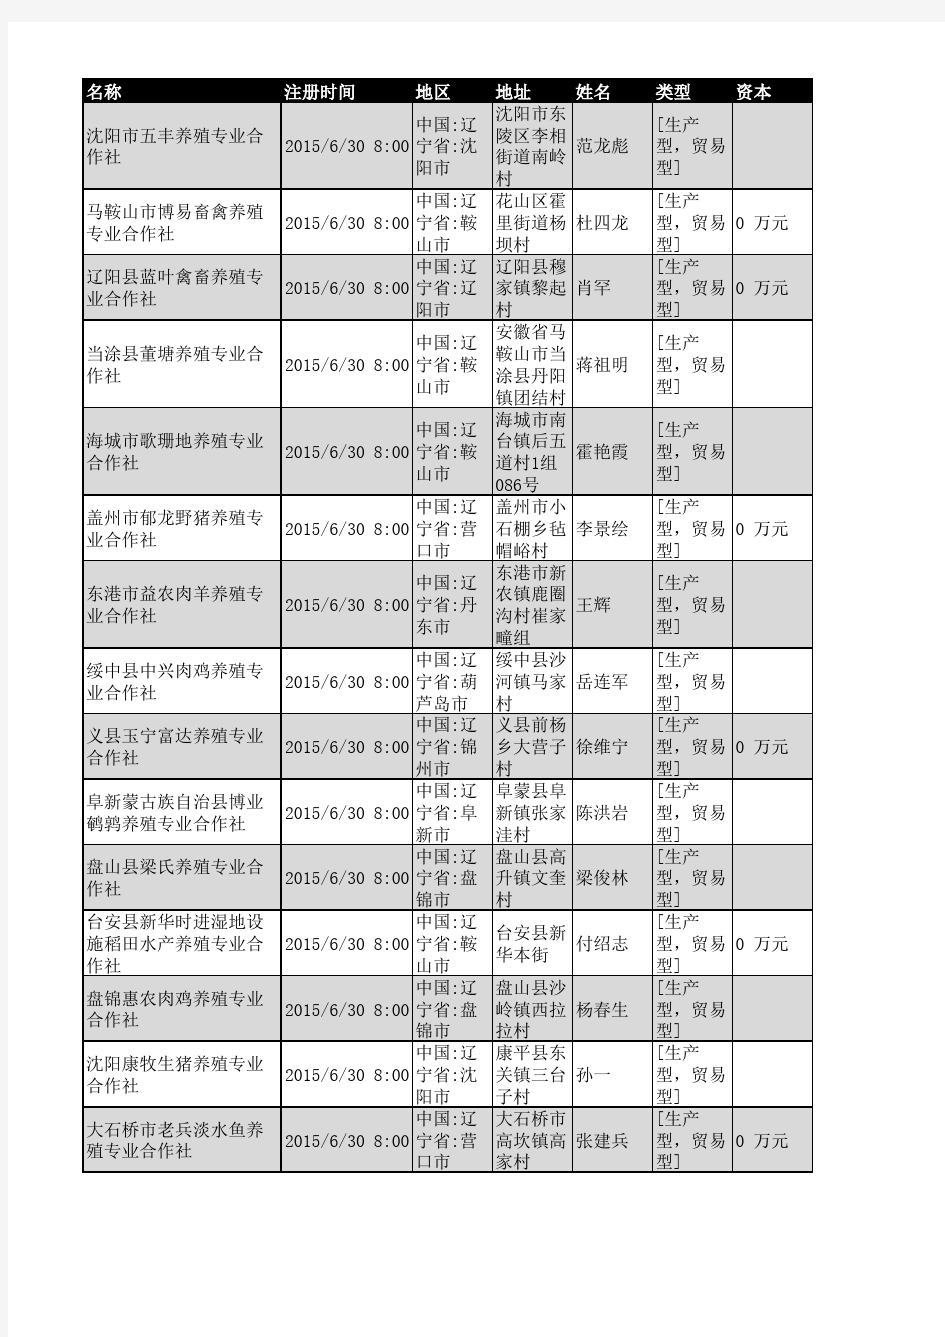 2018年辽宁省养殖行业企业名录396家